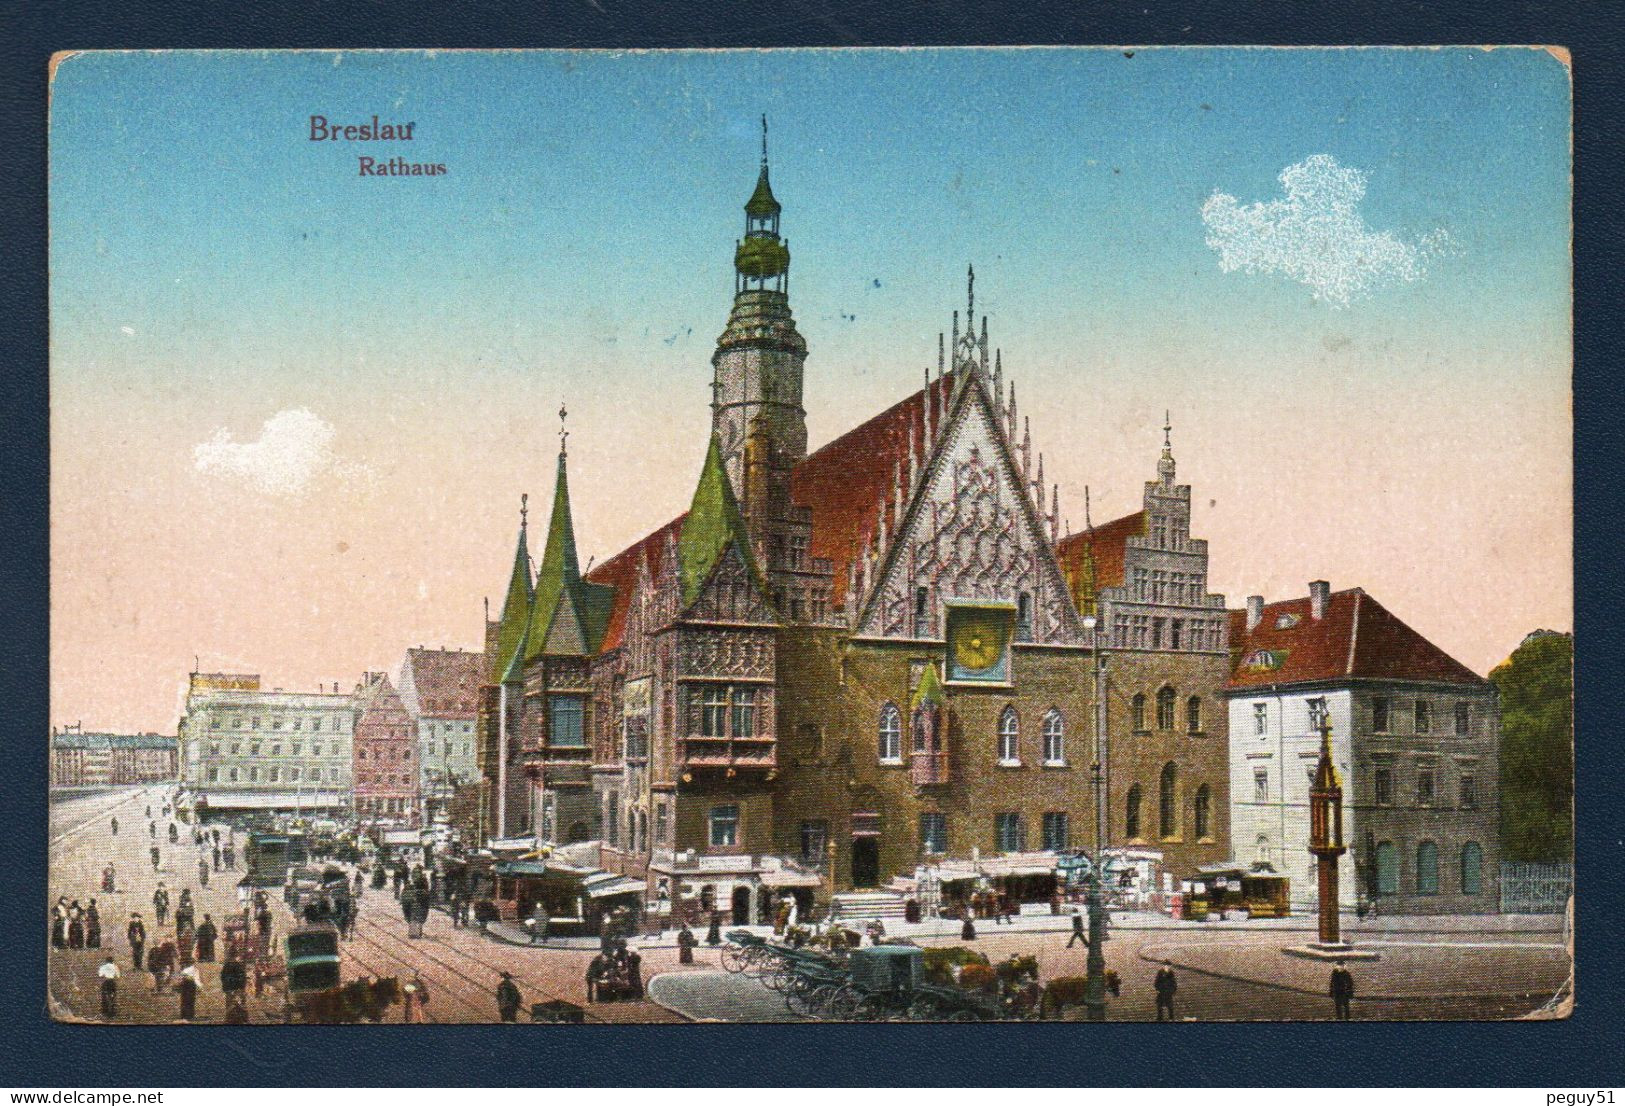 Pologne. Wroclaw (Breslau). Rathaus. Hôtel De Ville, Place Du Marché. Franchise Militaire Et Censure De Metz. 1917 - Polen